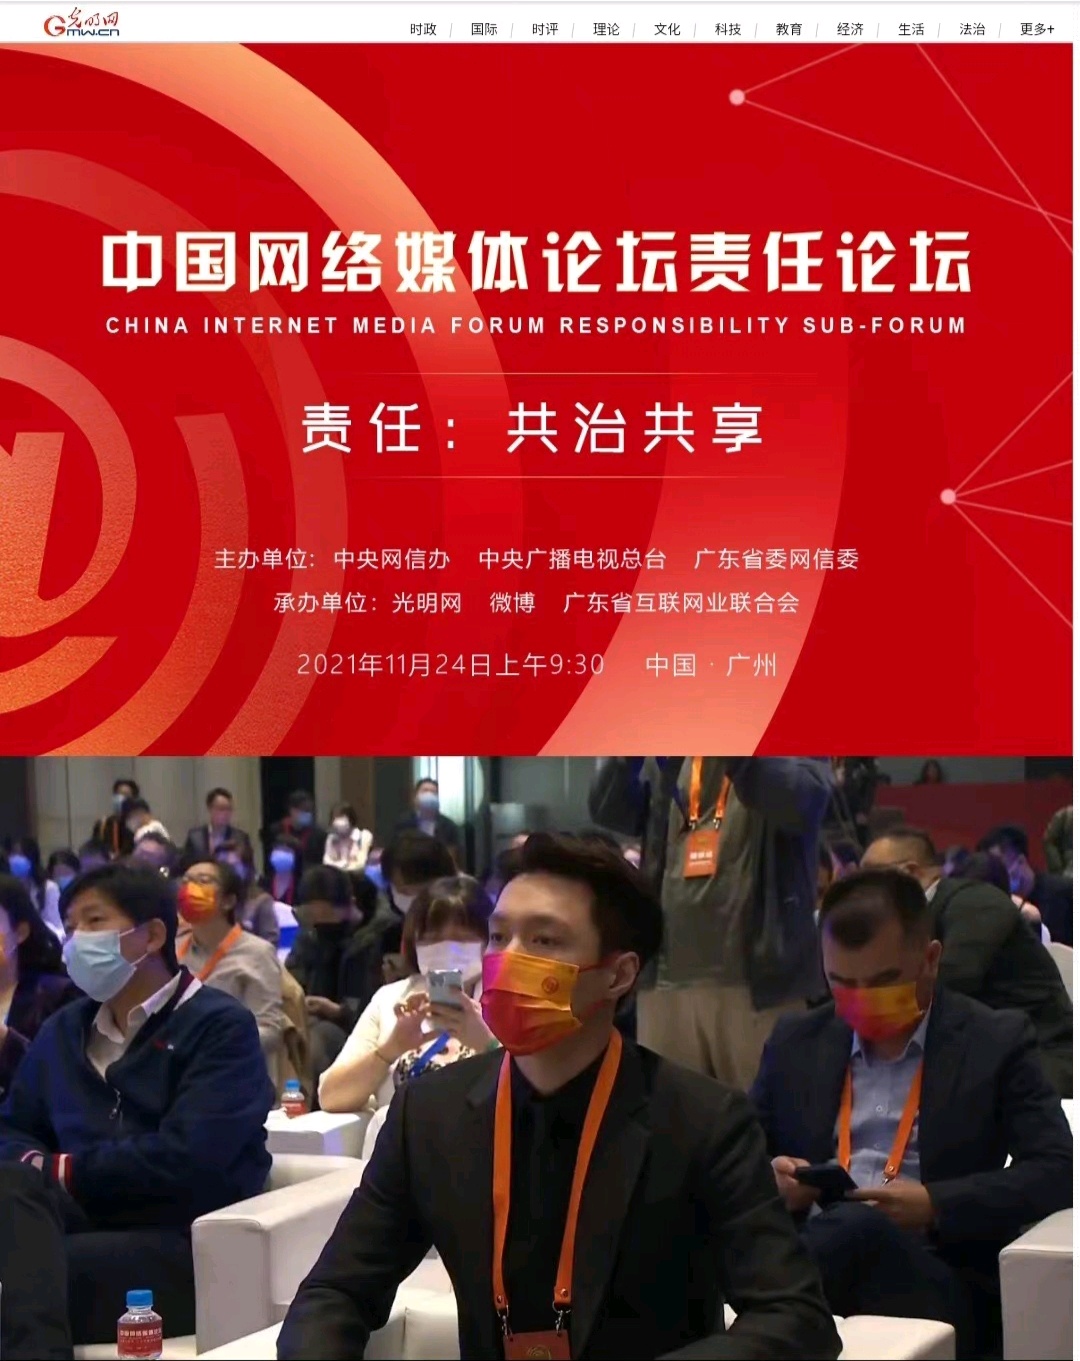 张艺兴出席中国网络媒体论坛，作为艺人代表，谈及网络谣言危害-幽兰花香